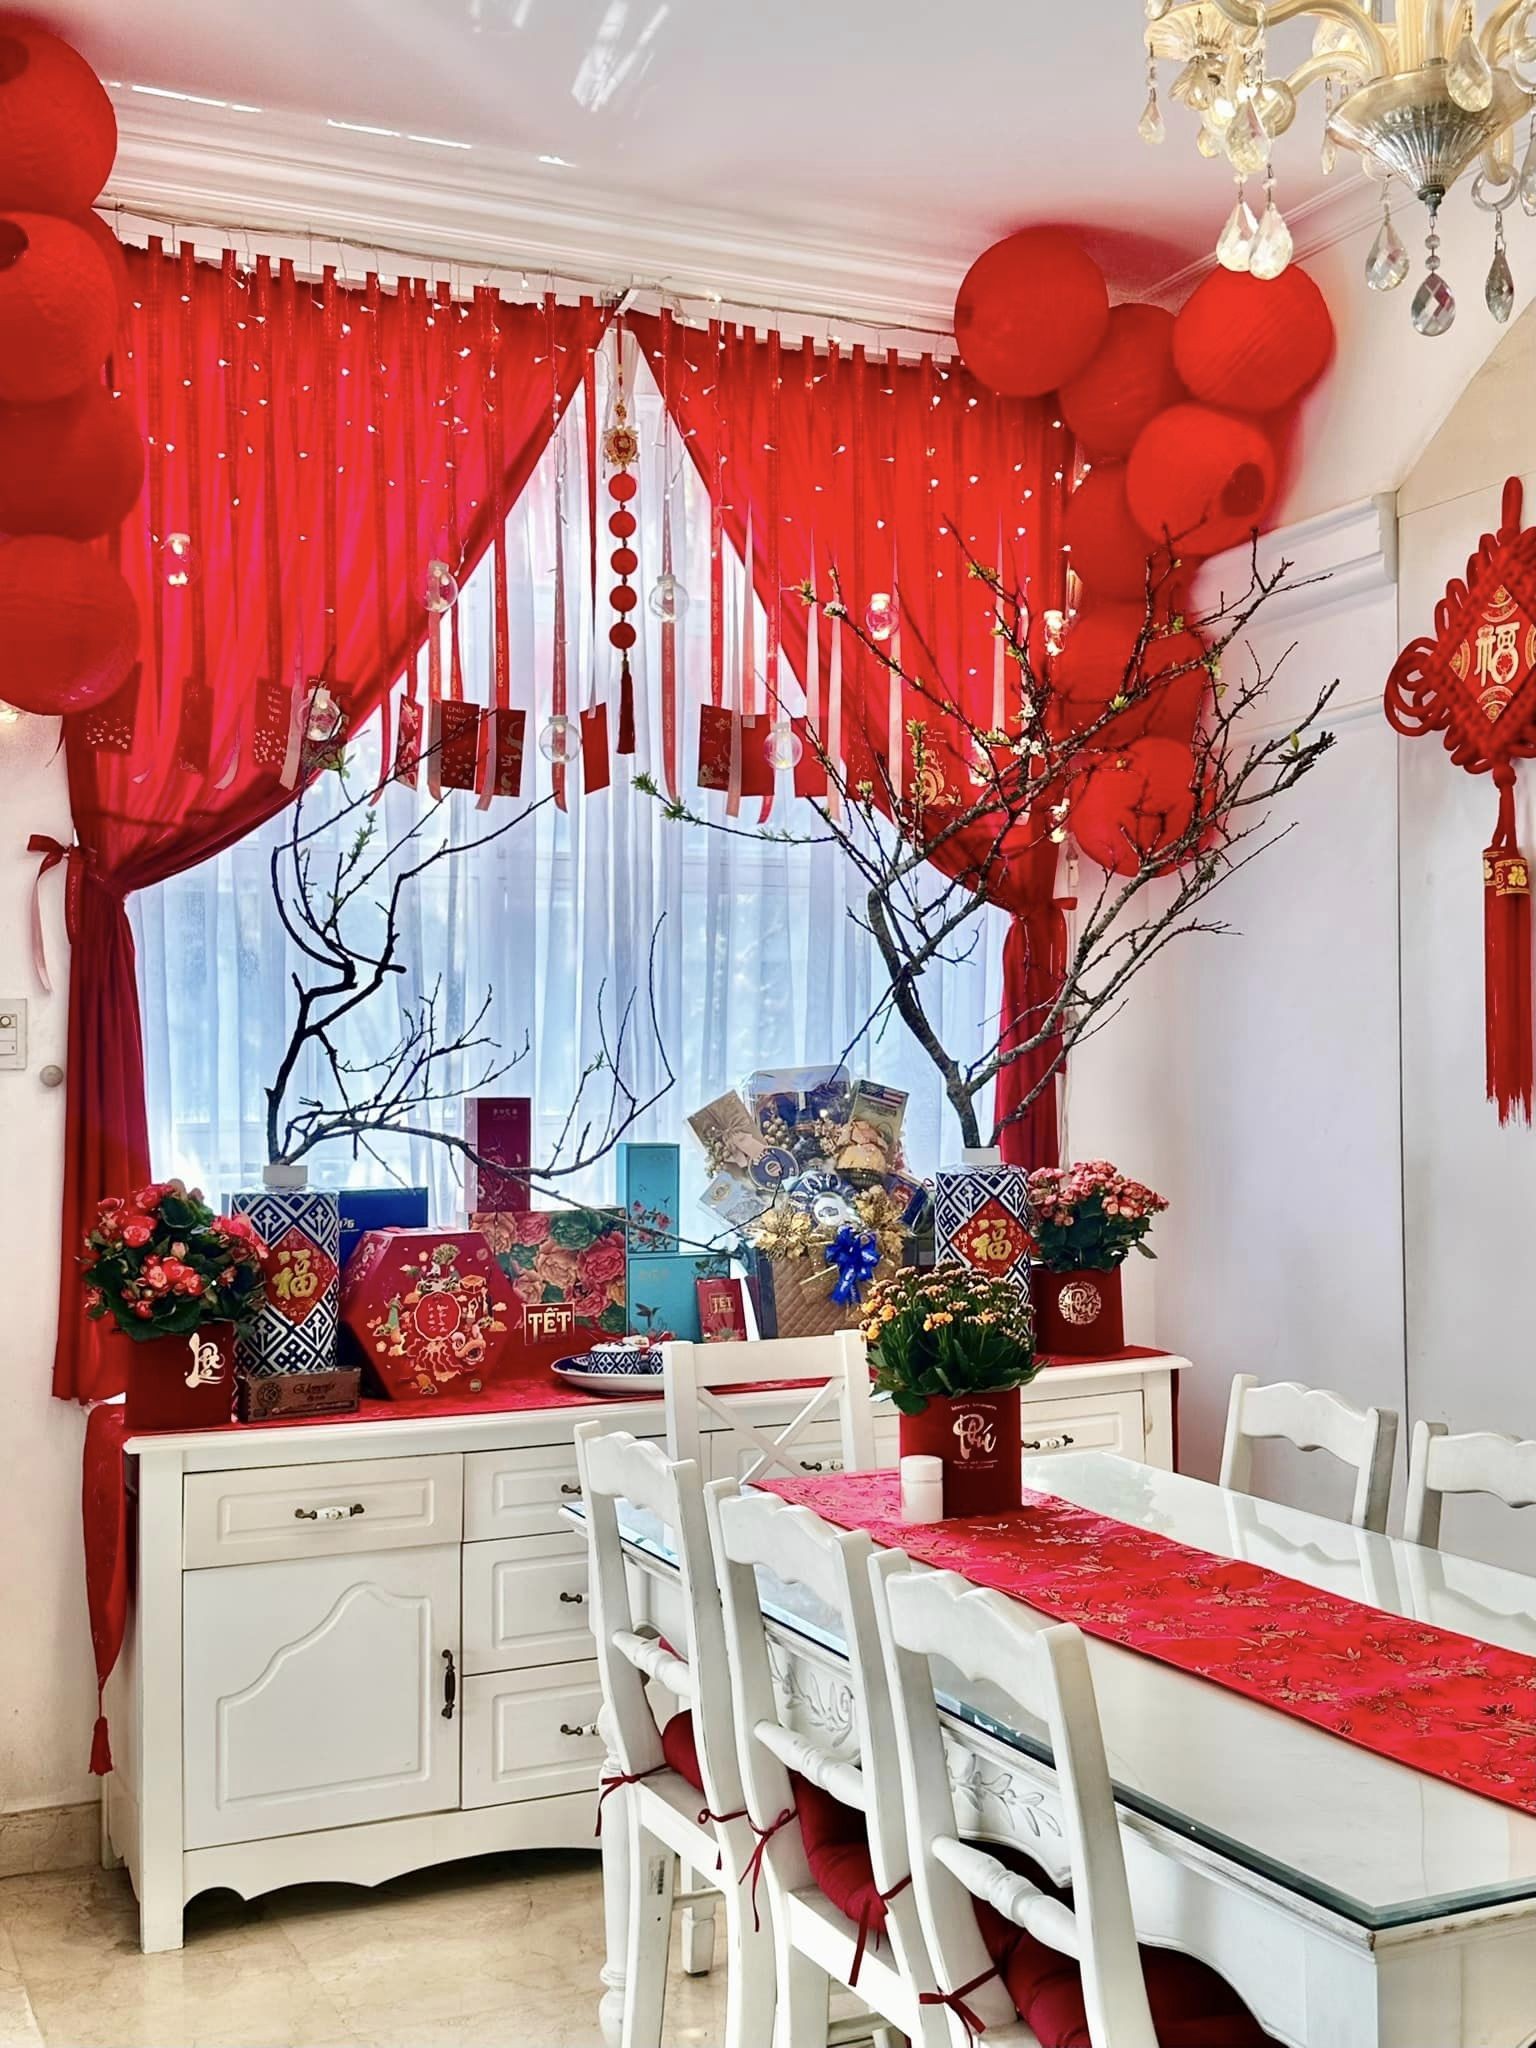 Biệt thự, penthouse của diva Hồng Nhung, người mẫu Thúy Hạnh ngày cận Tết - Ảnh 8.